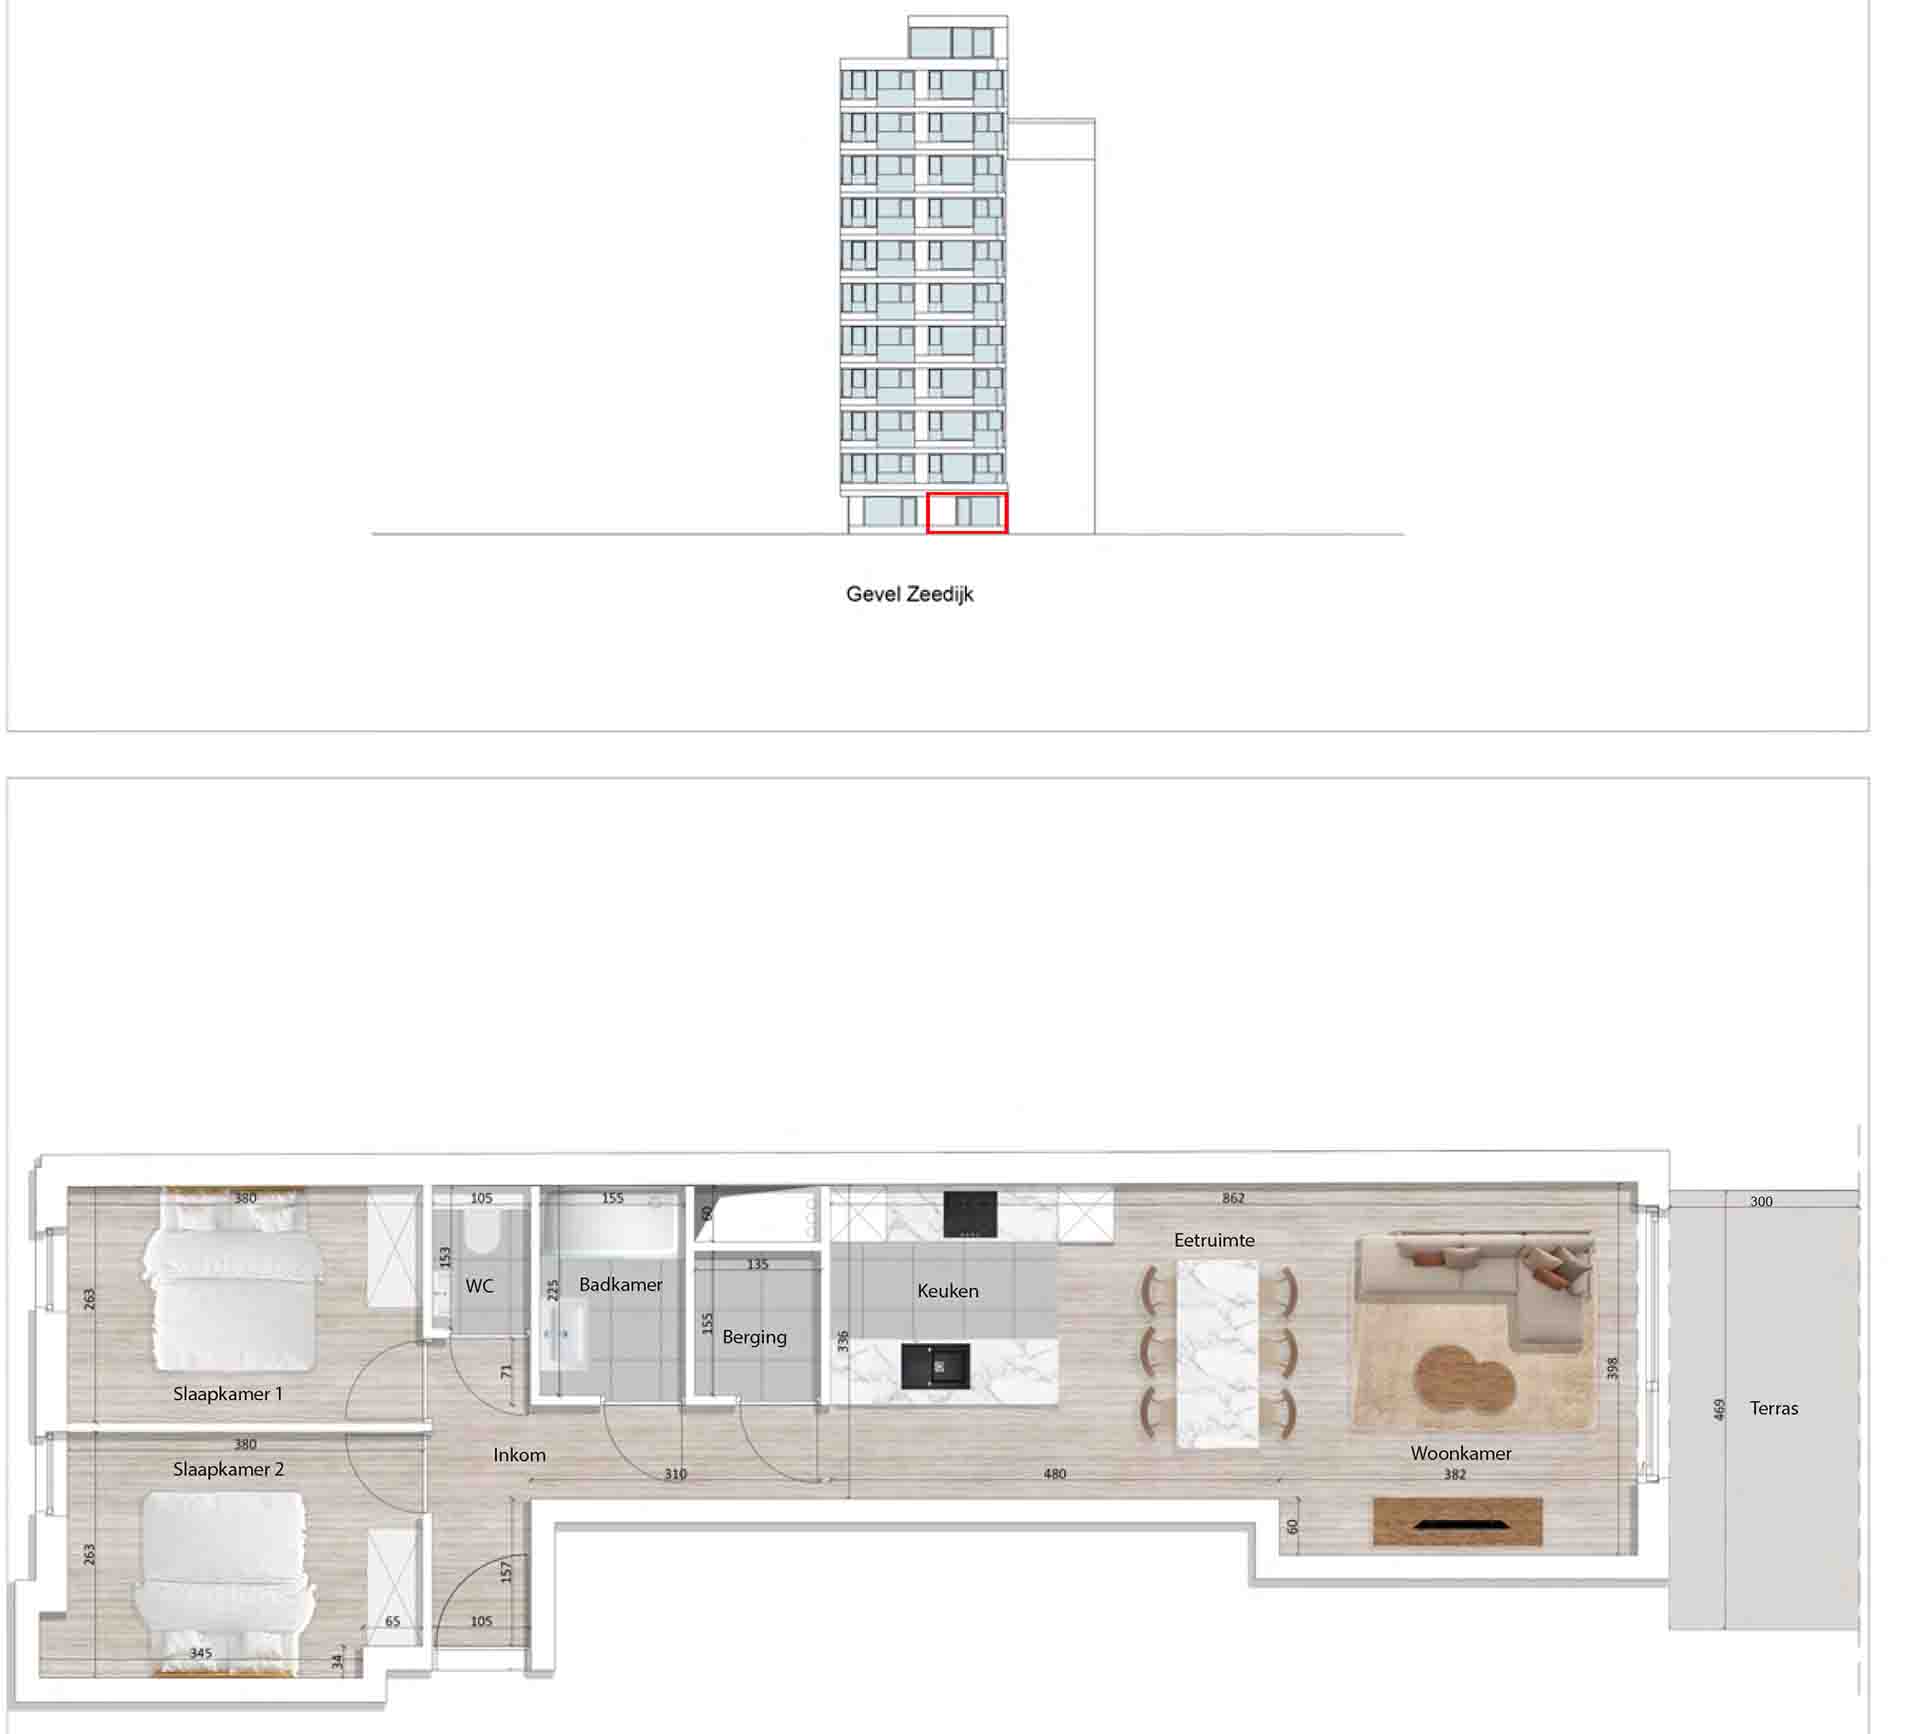 Residentie <br/> Pier - image appartement-te-koop-blankenberge-residentie-pier-plan-0002 on https://hoprom.be